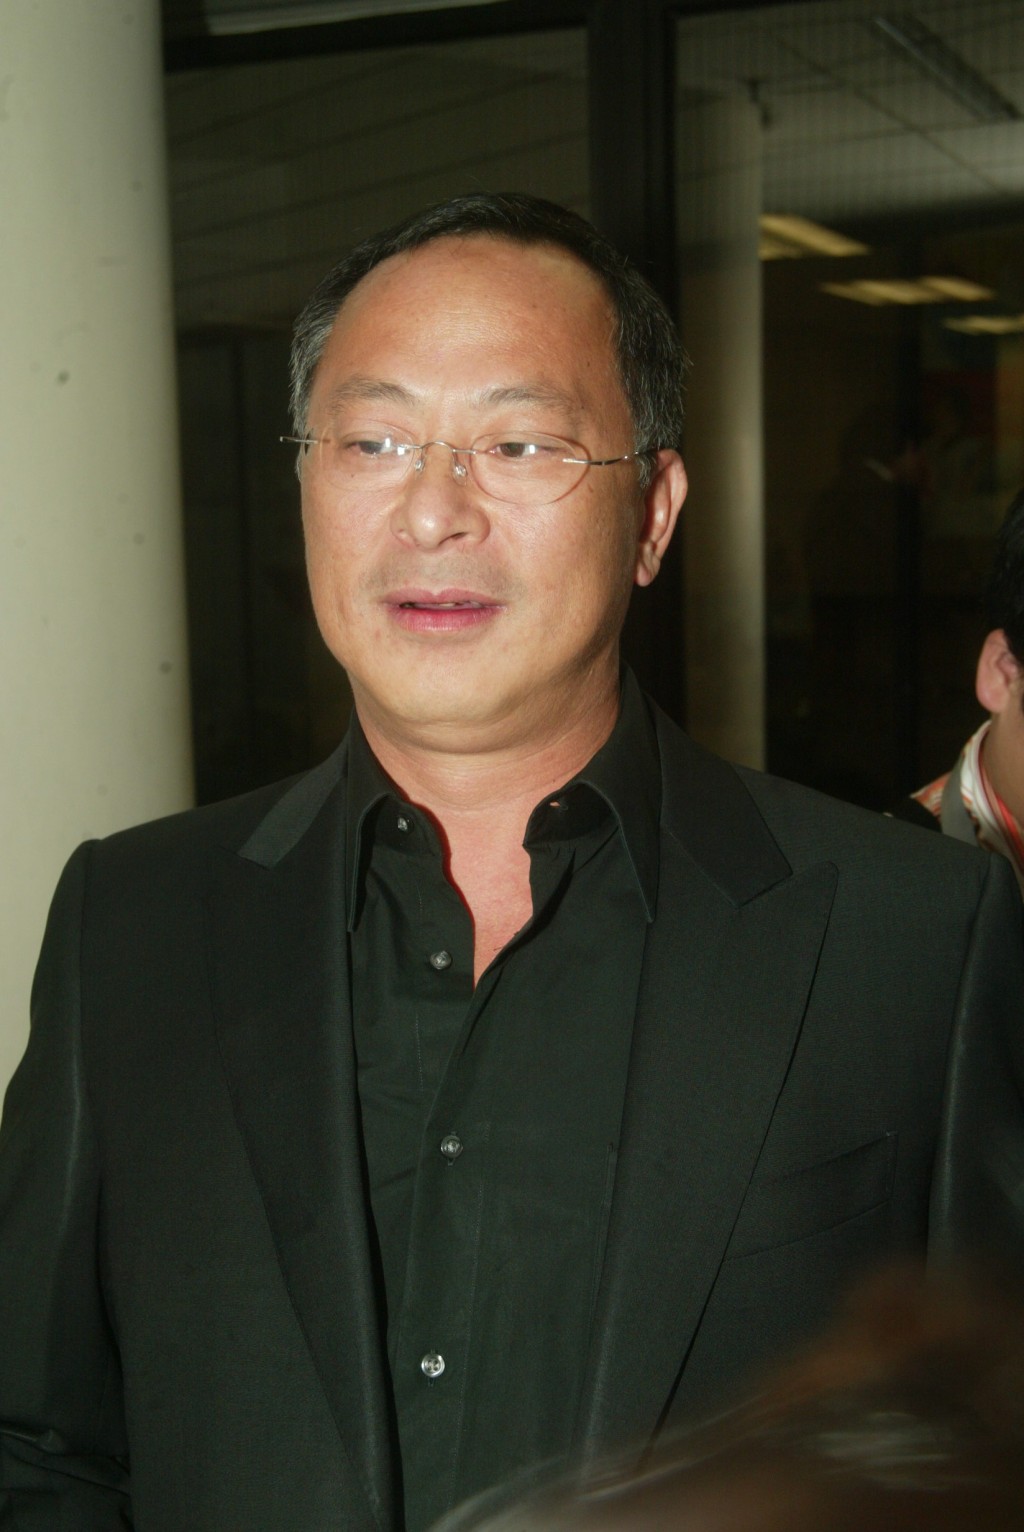 68歲的杜琪峯是香港電影殿堂級導演之一。